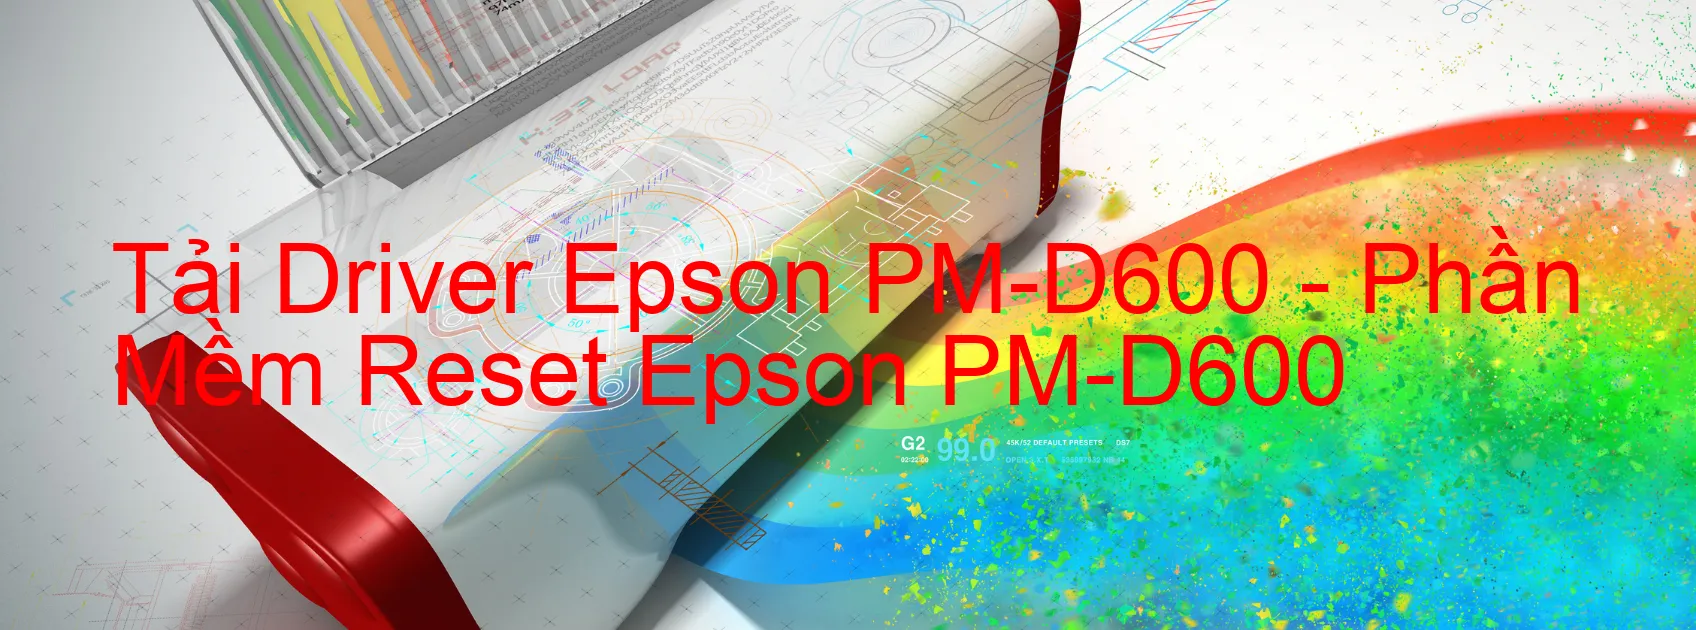 Driver Epson PM-D600, Phần Mềm Reset Epson PM-D600